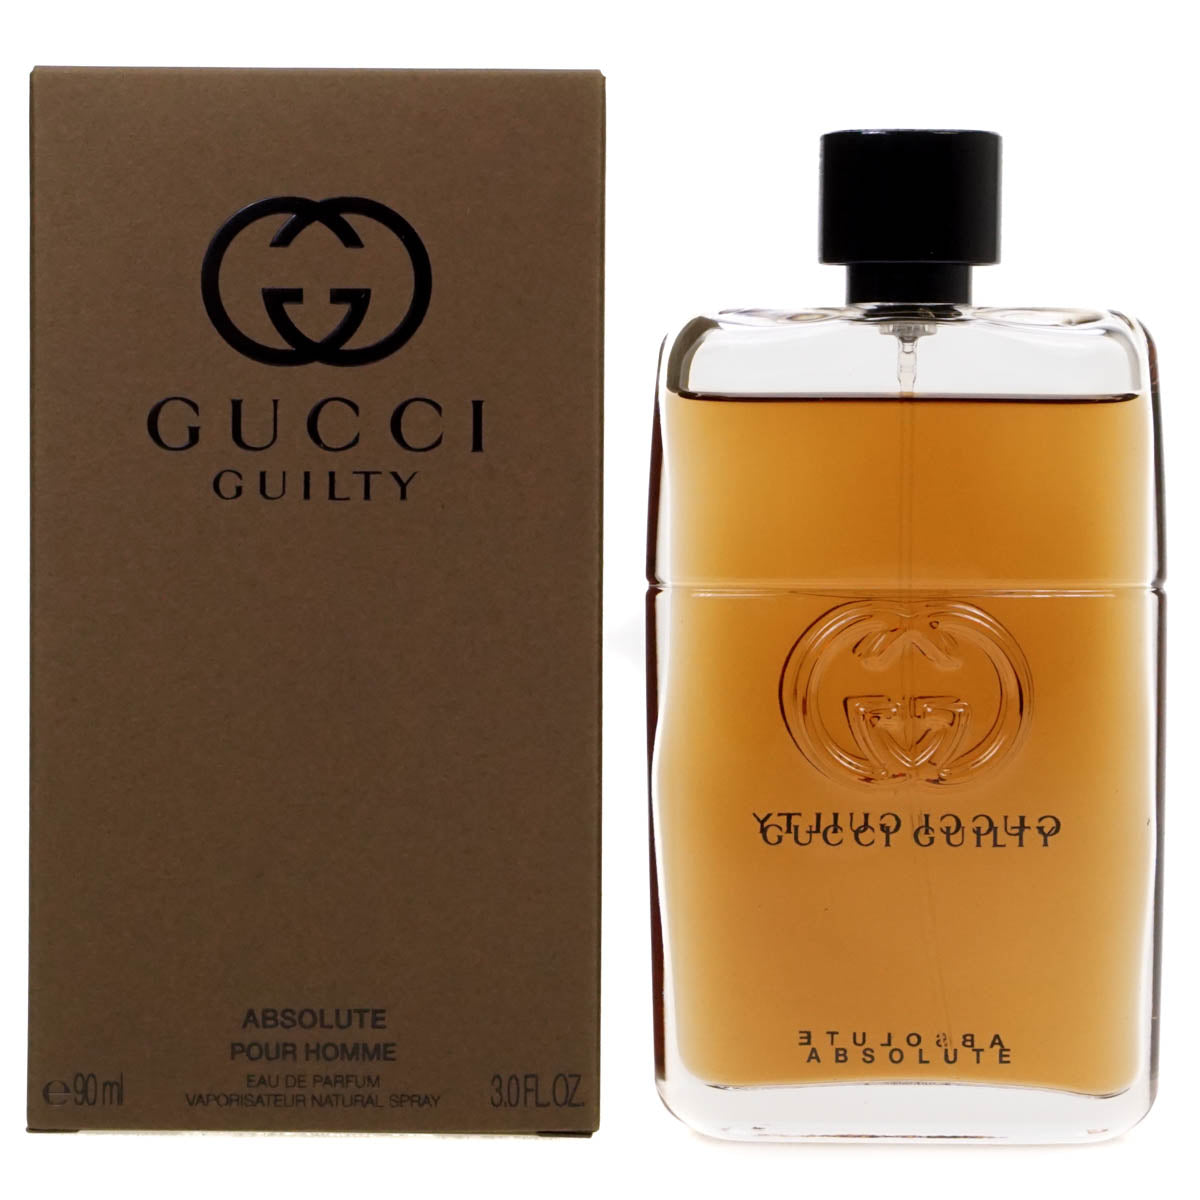 Gucci Guilty Absolute Pour Homme 90ml Eau De Parfum